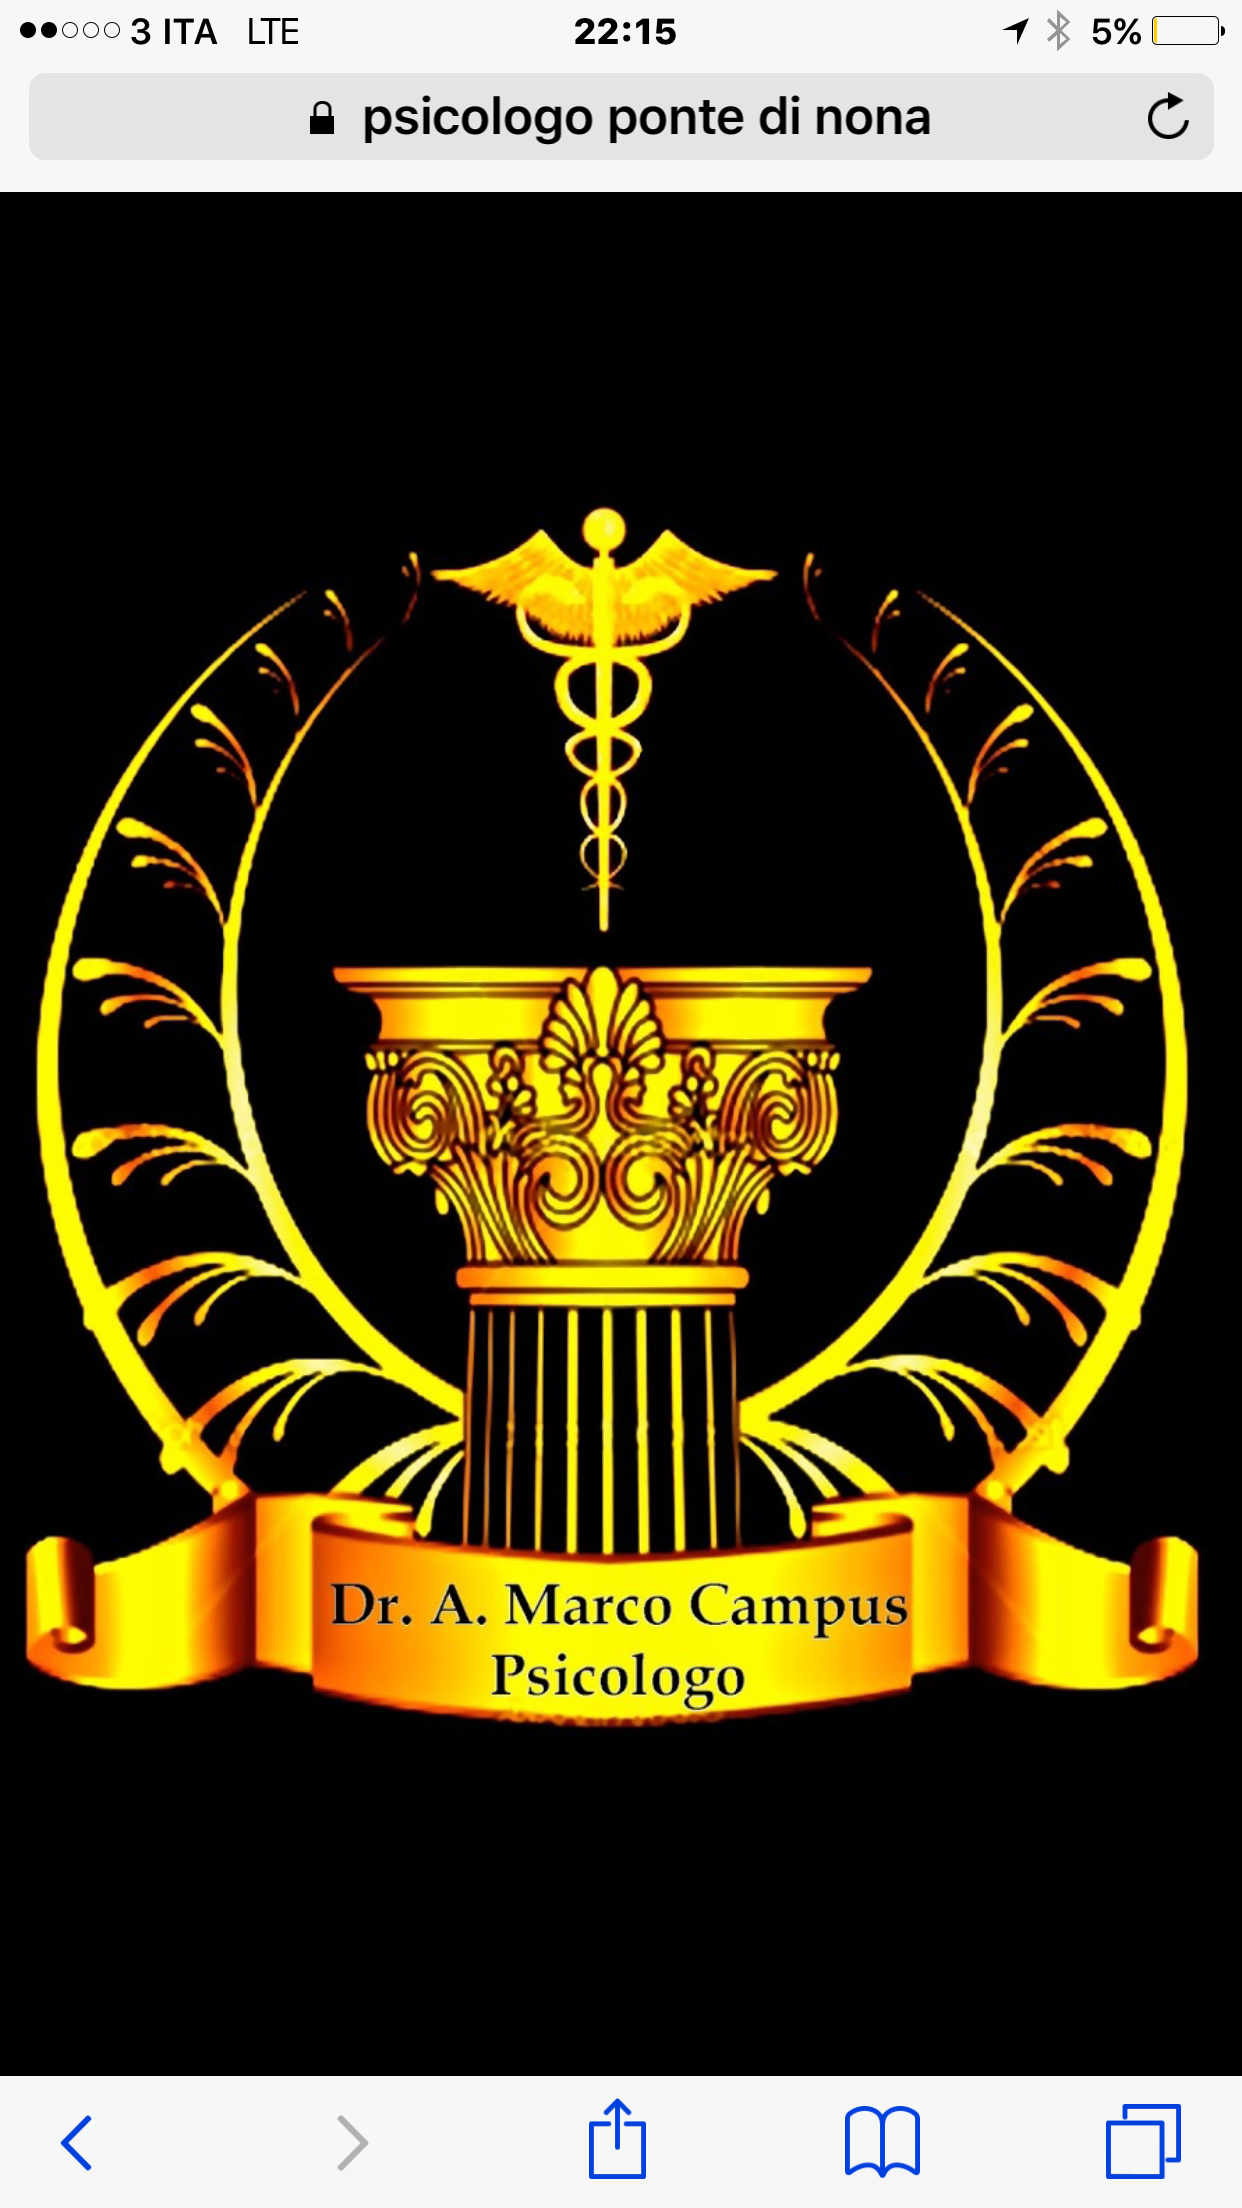 Dottore - dottoressa a Roma (RM) Domicilio Psicologo Ponte di Nona Dr. Antonio Marco Campus